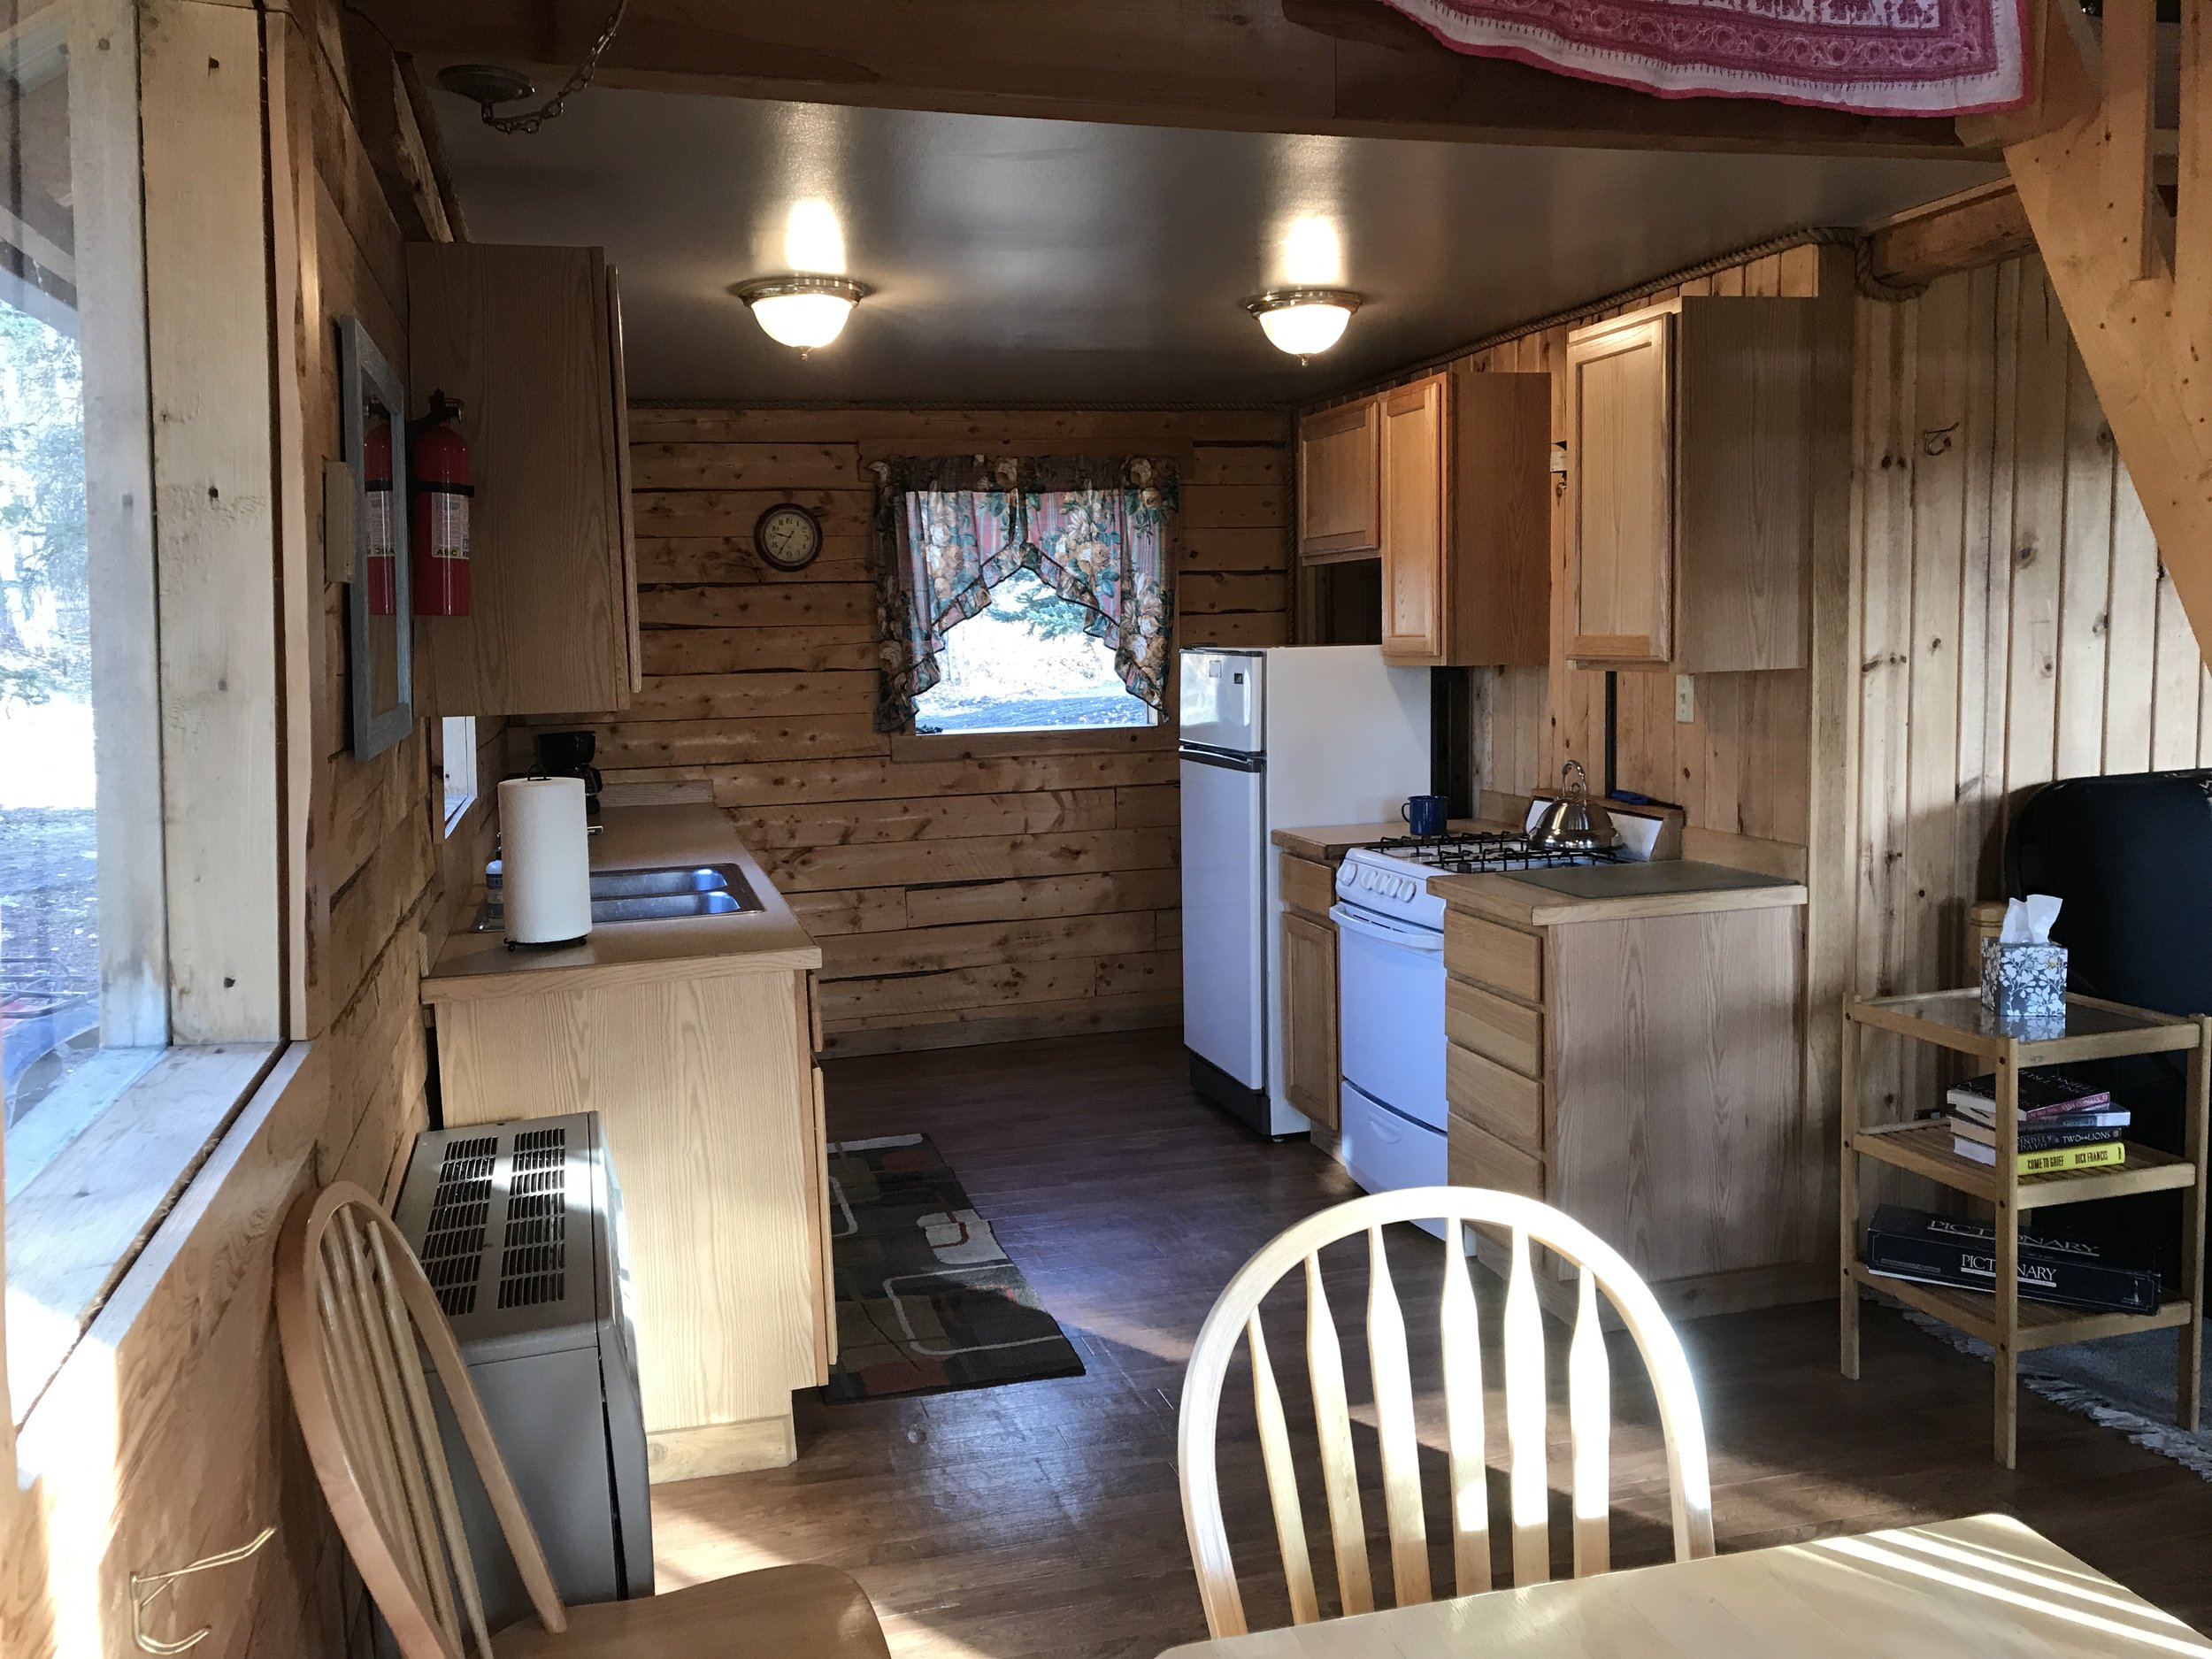  Bluff Cabin kitchen 